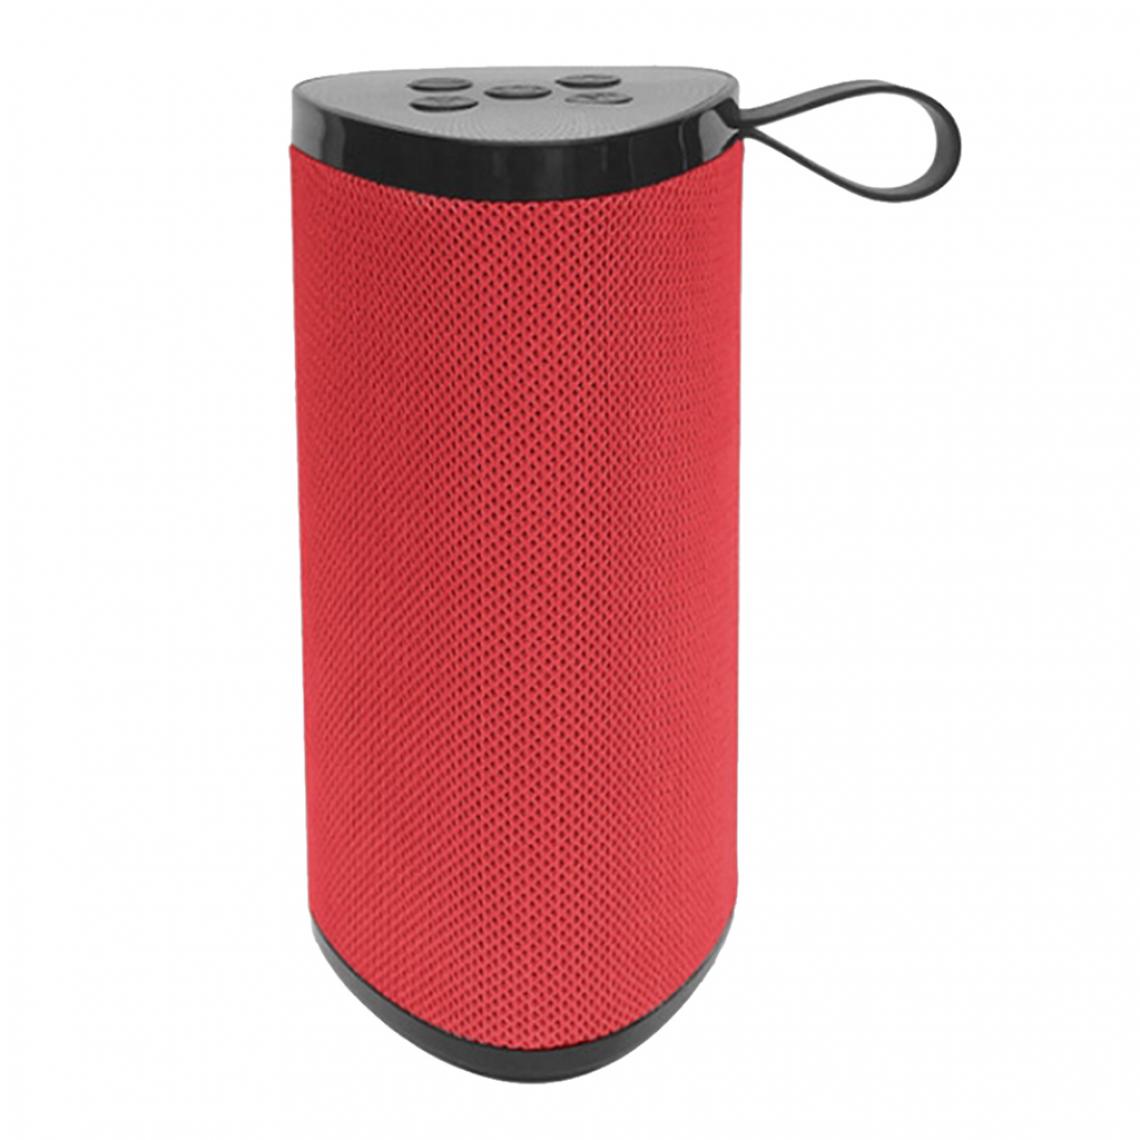 marque generique - Haut-parleur Bluetooth Sans Fil Portable Stéréo Bass Loud Bass Rouge - Barre de son